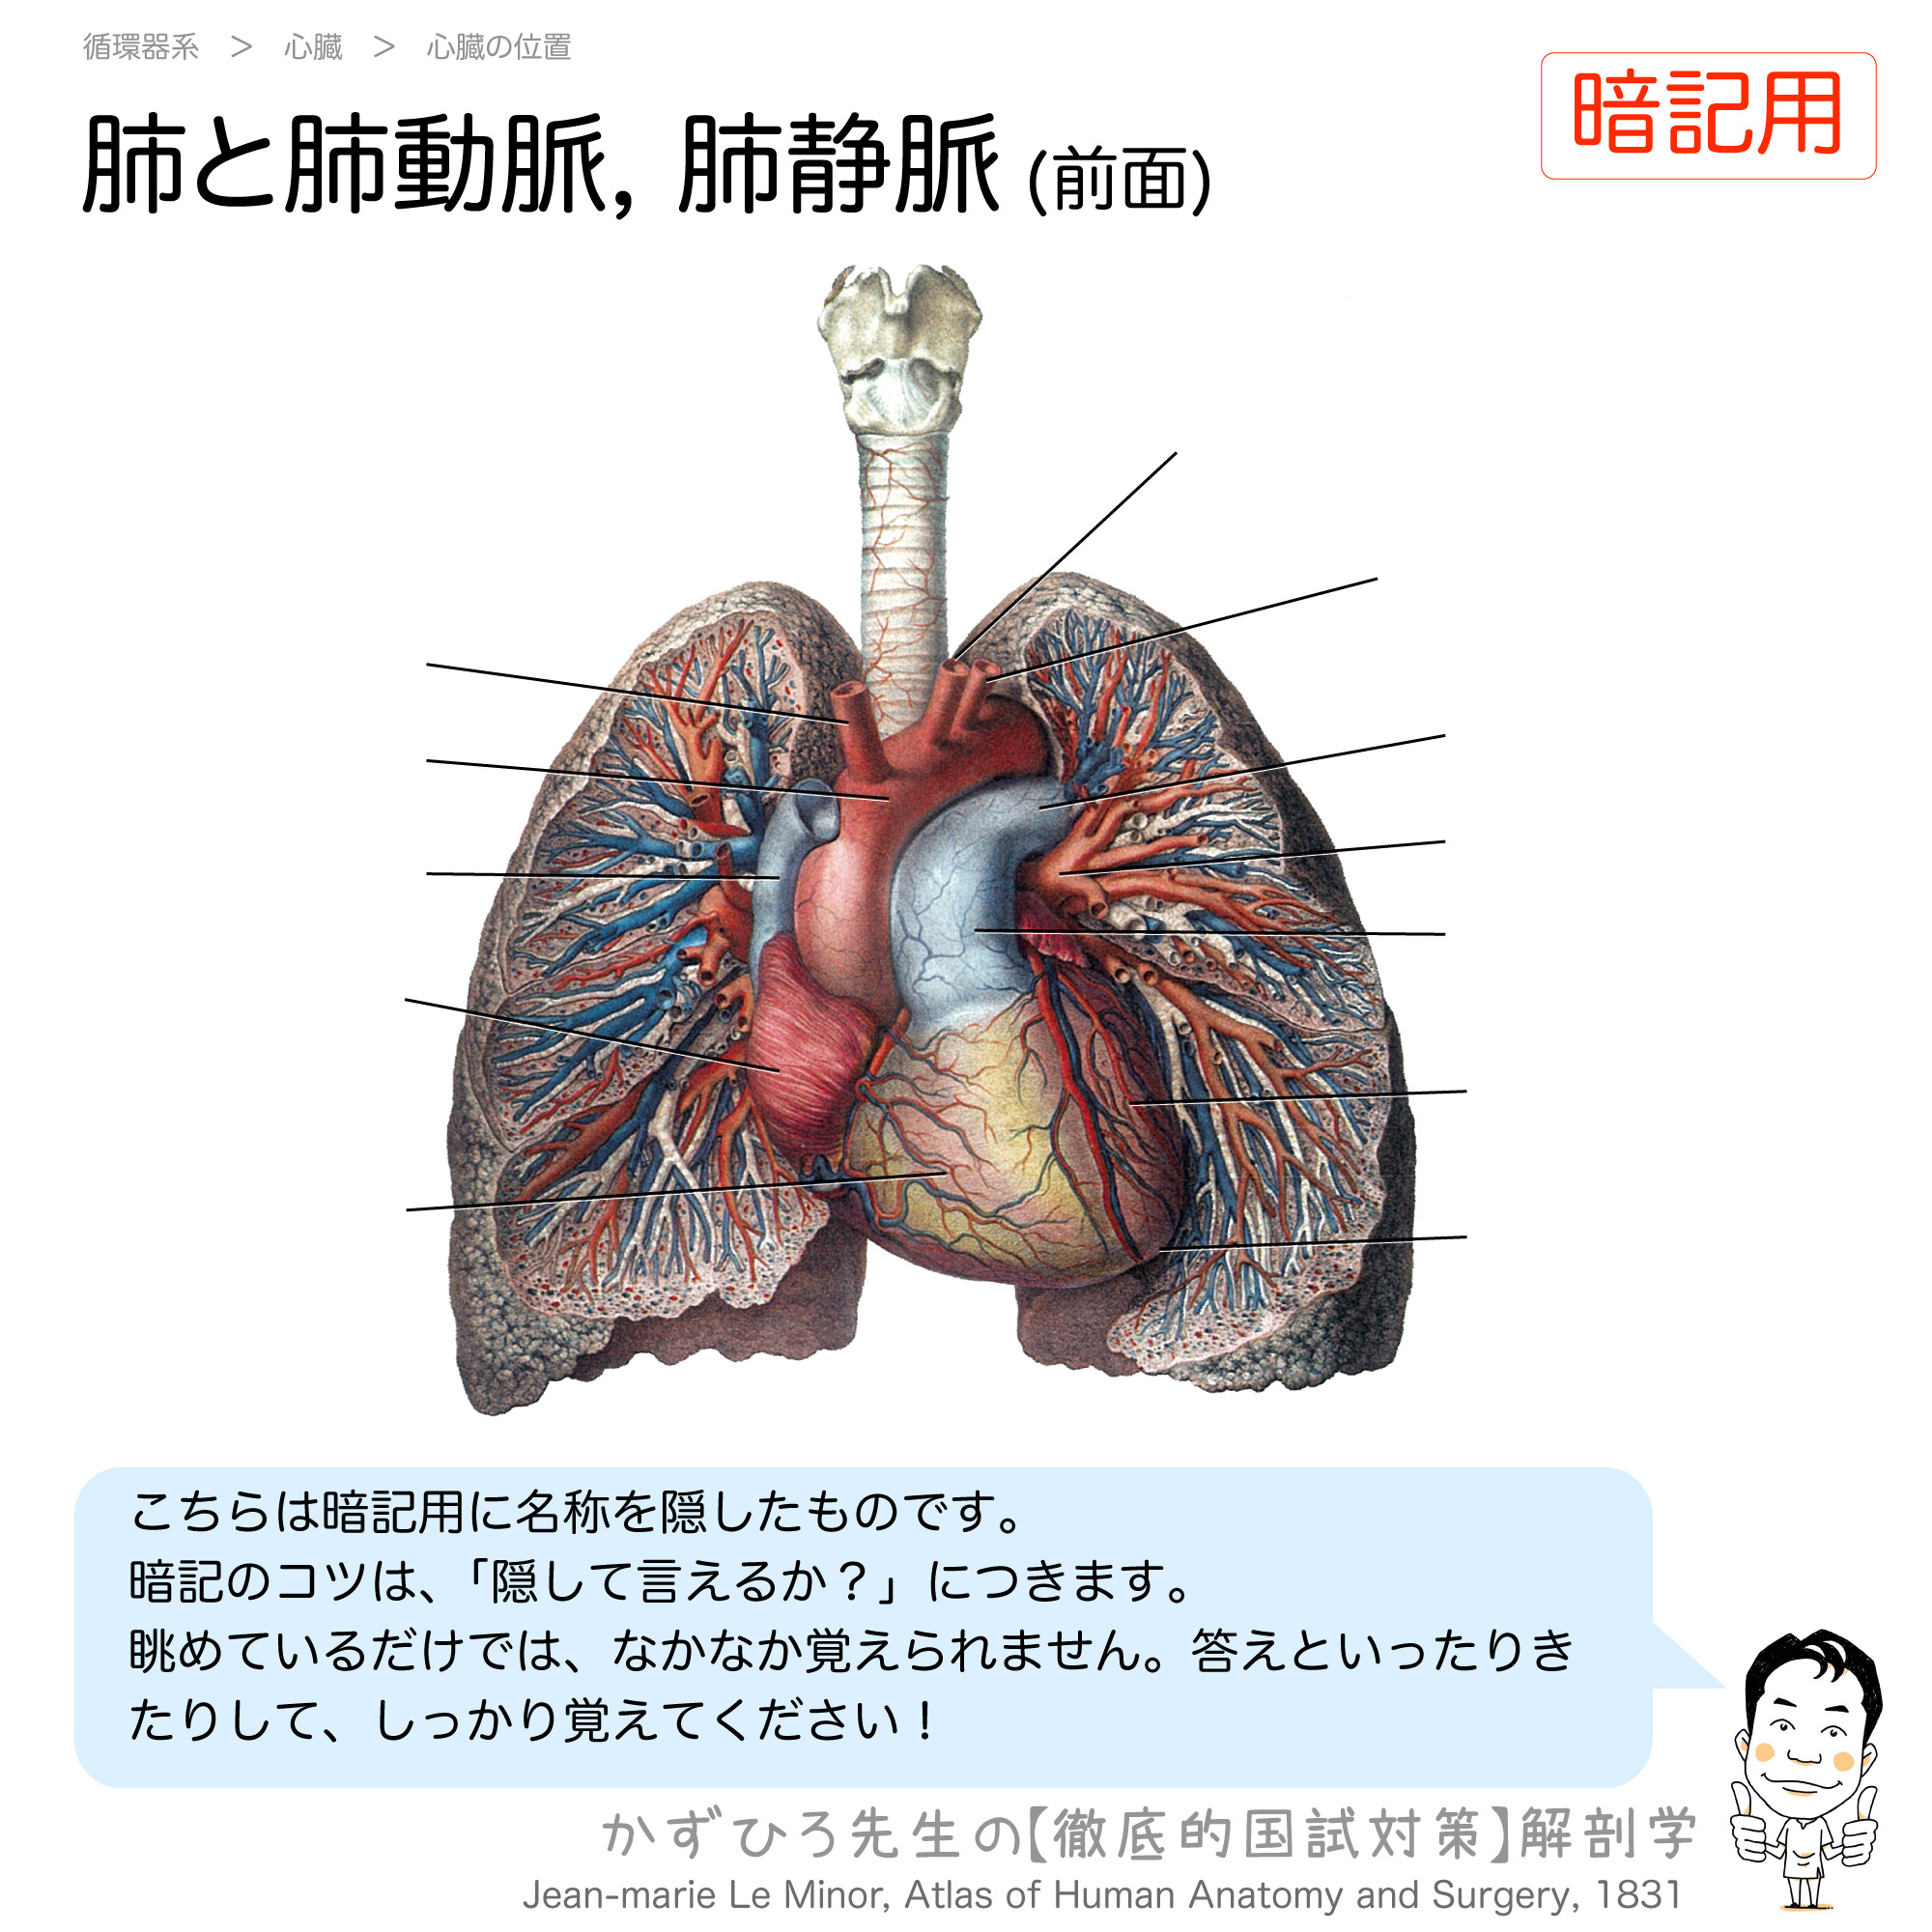 位置 肺 の